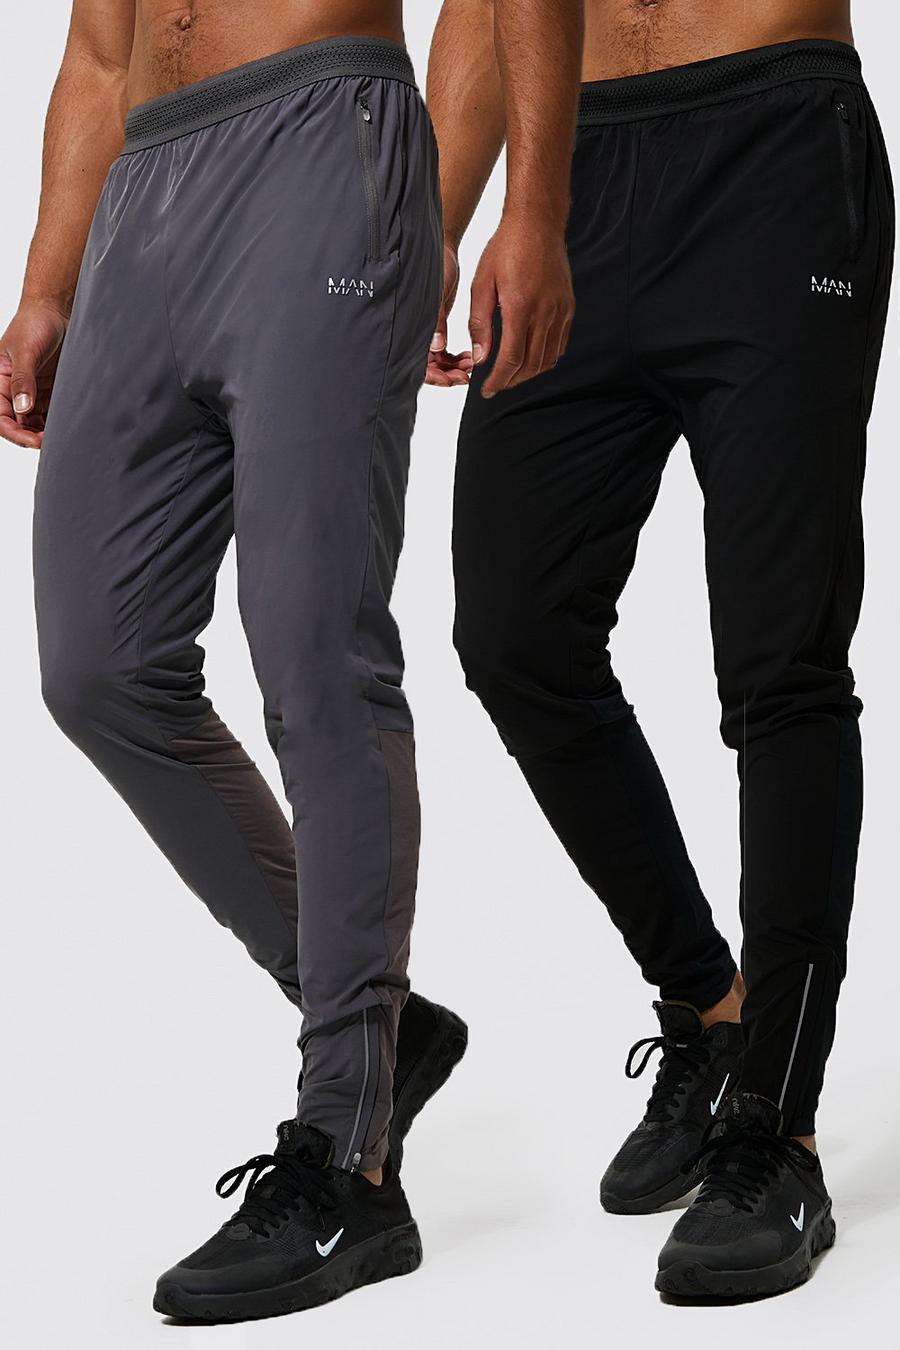 שחור nero מארז 2 זוגות מכנסי ריצה ספורטיביים קלילים לחדר הכושר Man, לגברים גבוהים